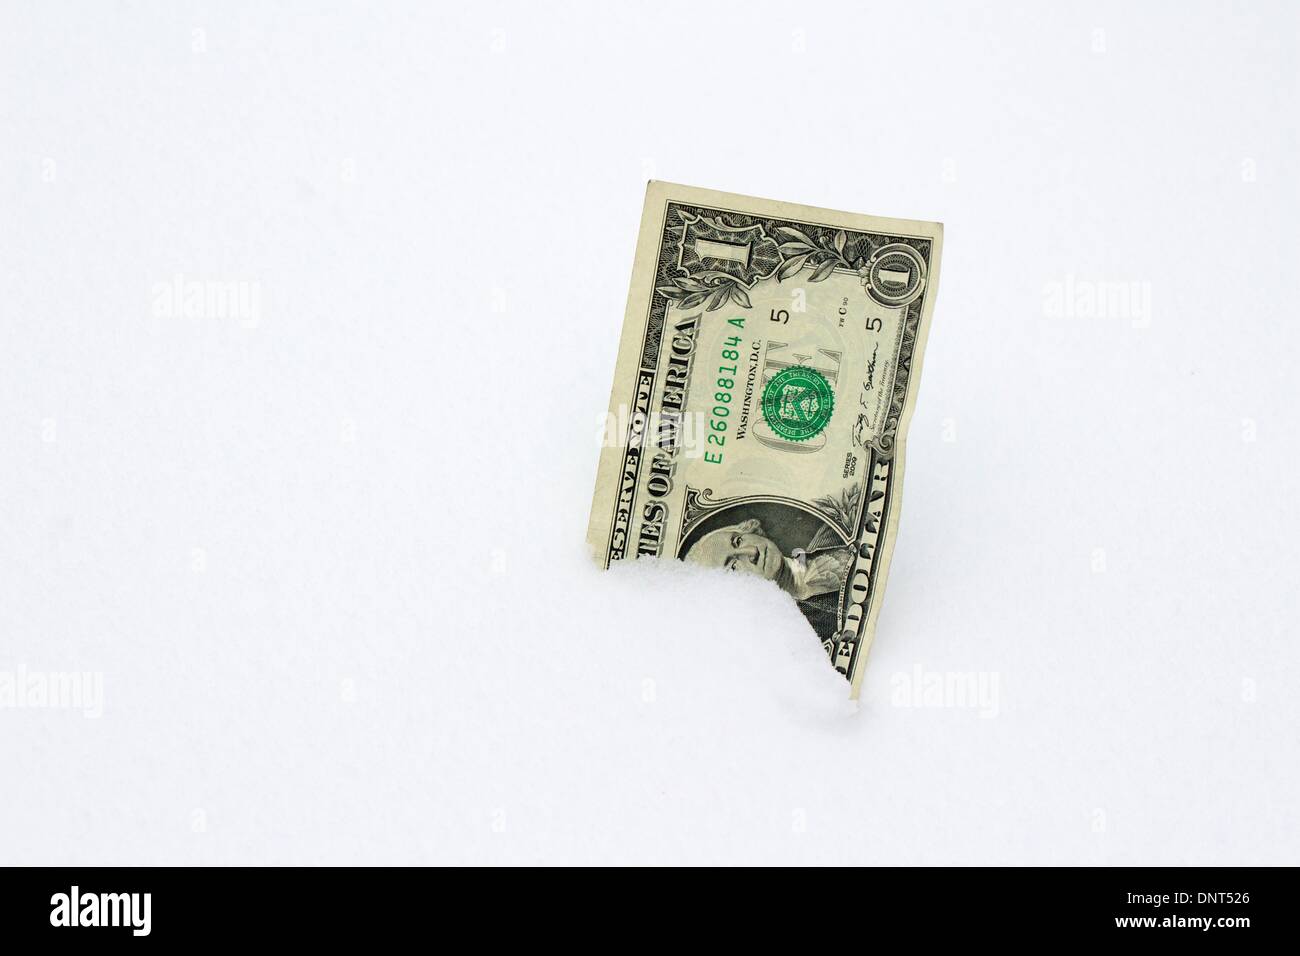 Oak Park, Illinois, EE.UU.. 5 de enero de 2014. Un EE.UU. $1.00 Bill incrustado en la nieve. Este invierno en nevado y gélido es una posible presión sobre los presupuestos municipales para la remoción de nieve y calefacción doméstica en los presupuestos. Crédito: Todd Bannor/Alamy Live News Foto de stock